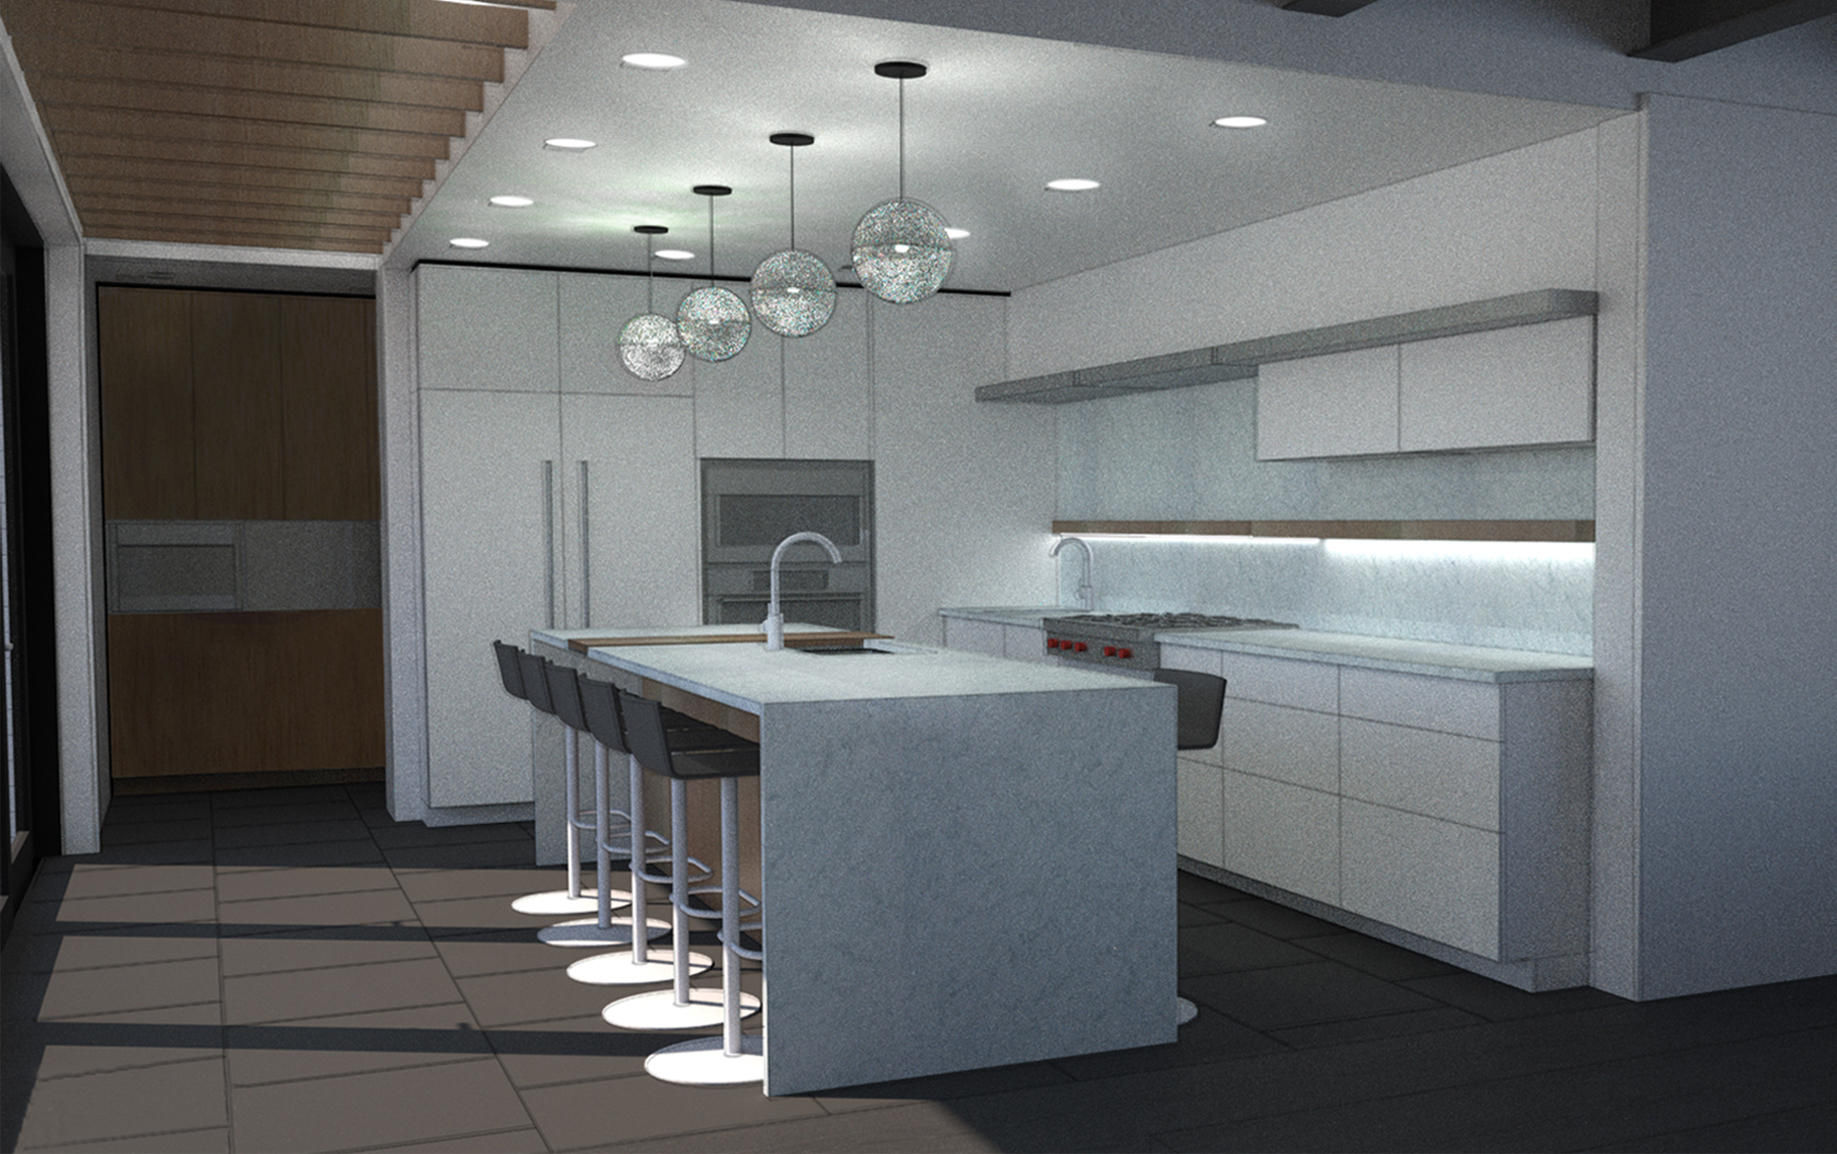 Kitchen_modern_rendering_architect_architecture_skie